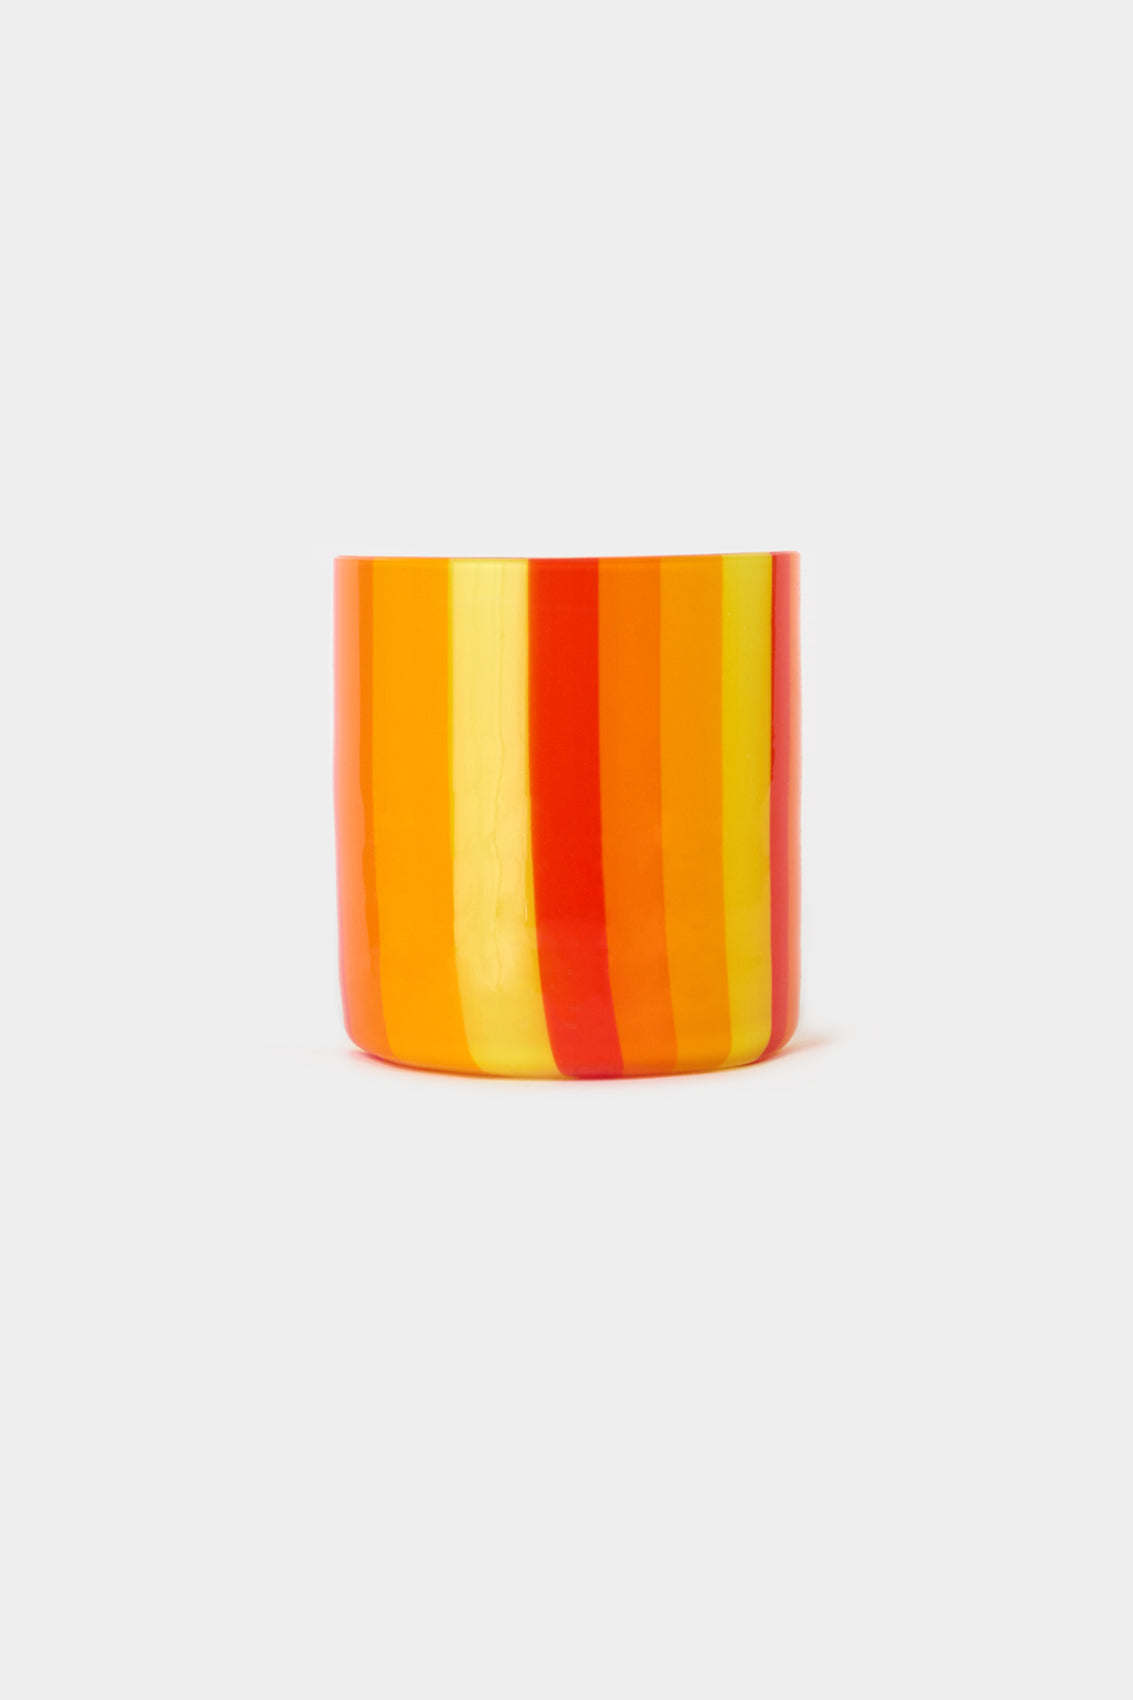 MURANO GLASS / red, orange & yellow